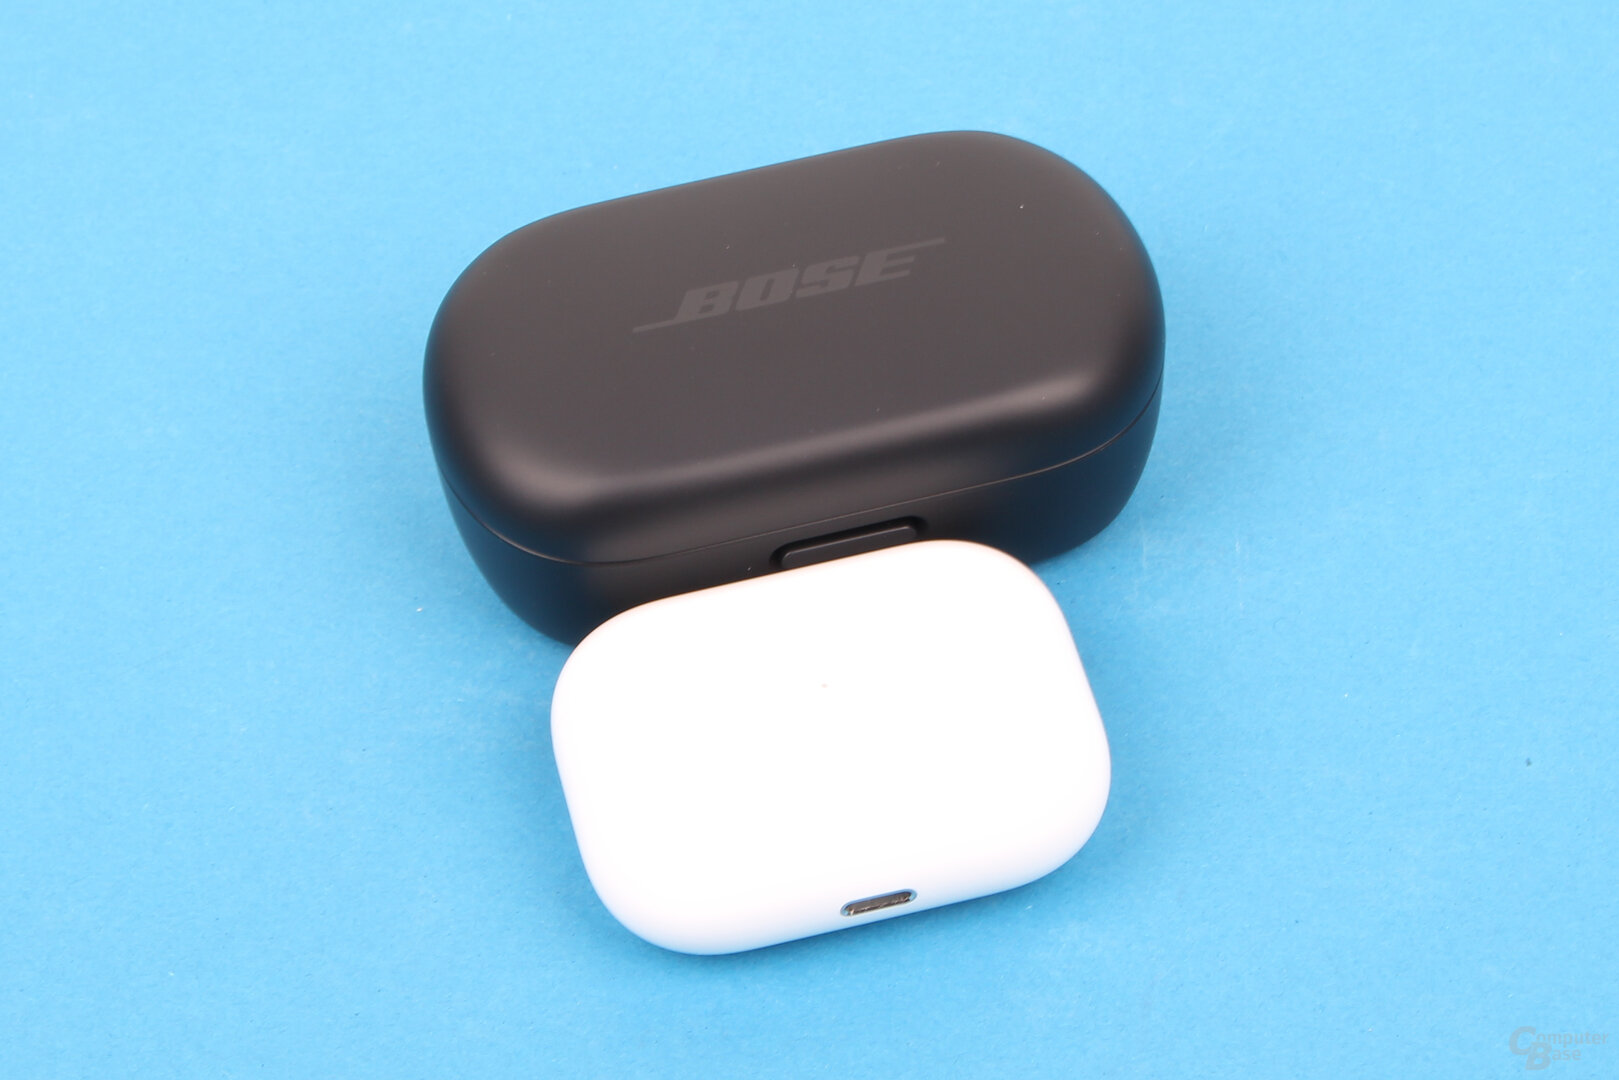 Ladecases der Bose QuietComfort Earbuds und Apple AirPods Pro im Vergleich